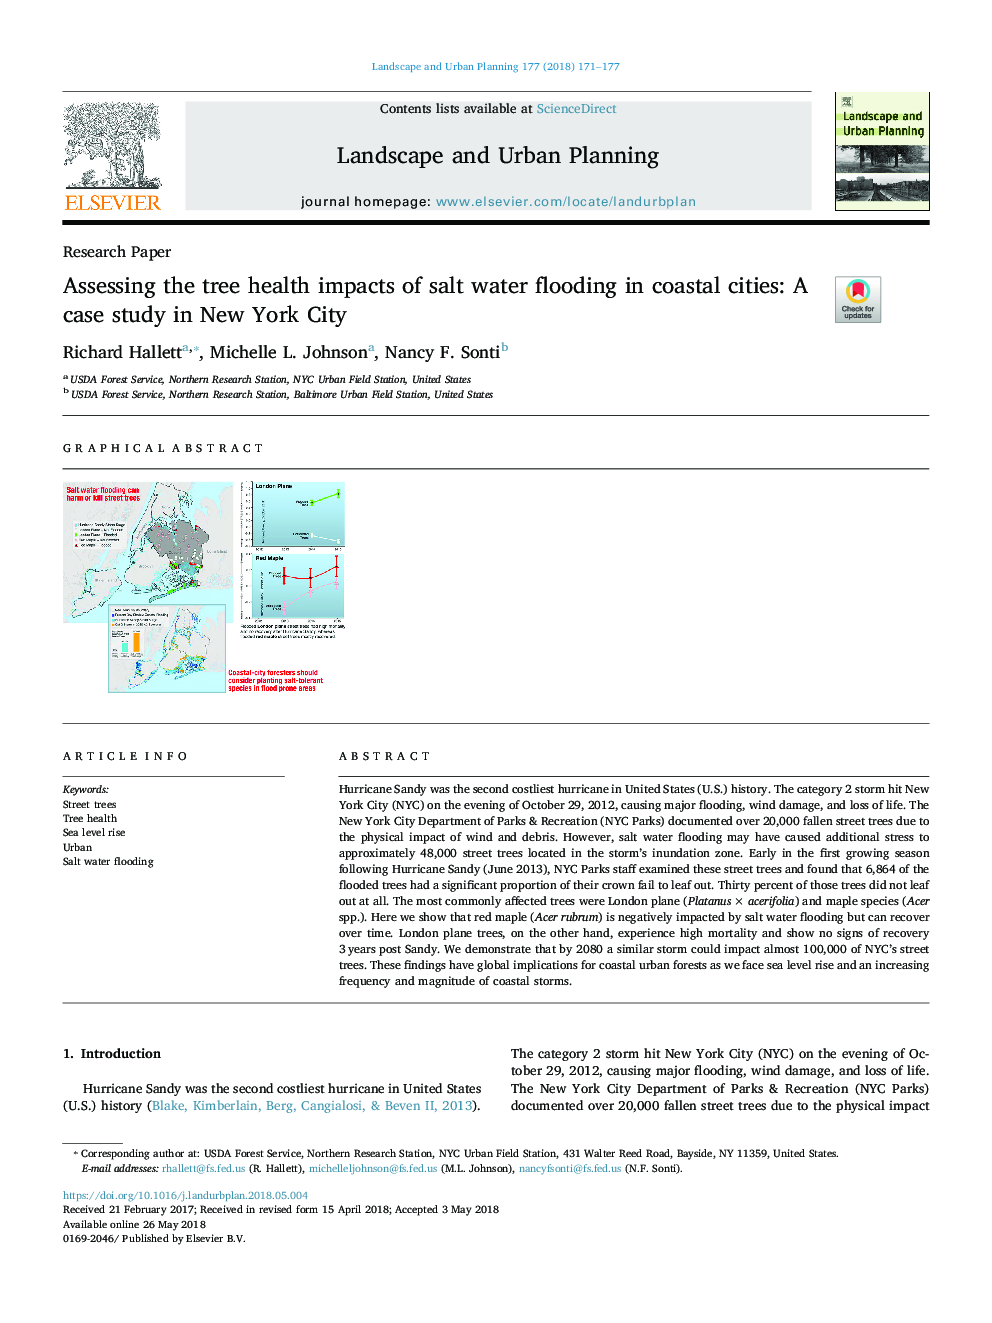 ارزیابی تاثیرات بهداشتی درخت سیلاب آب شور در شهرهای ساحلی: مطالعه موردی در شهر نیویورک 